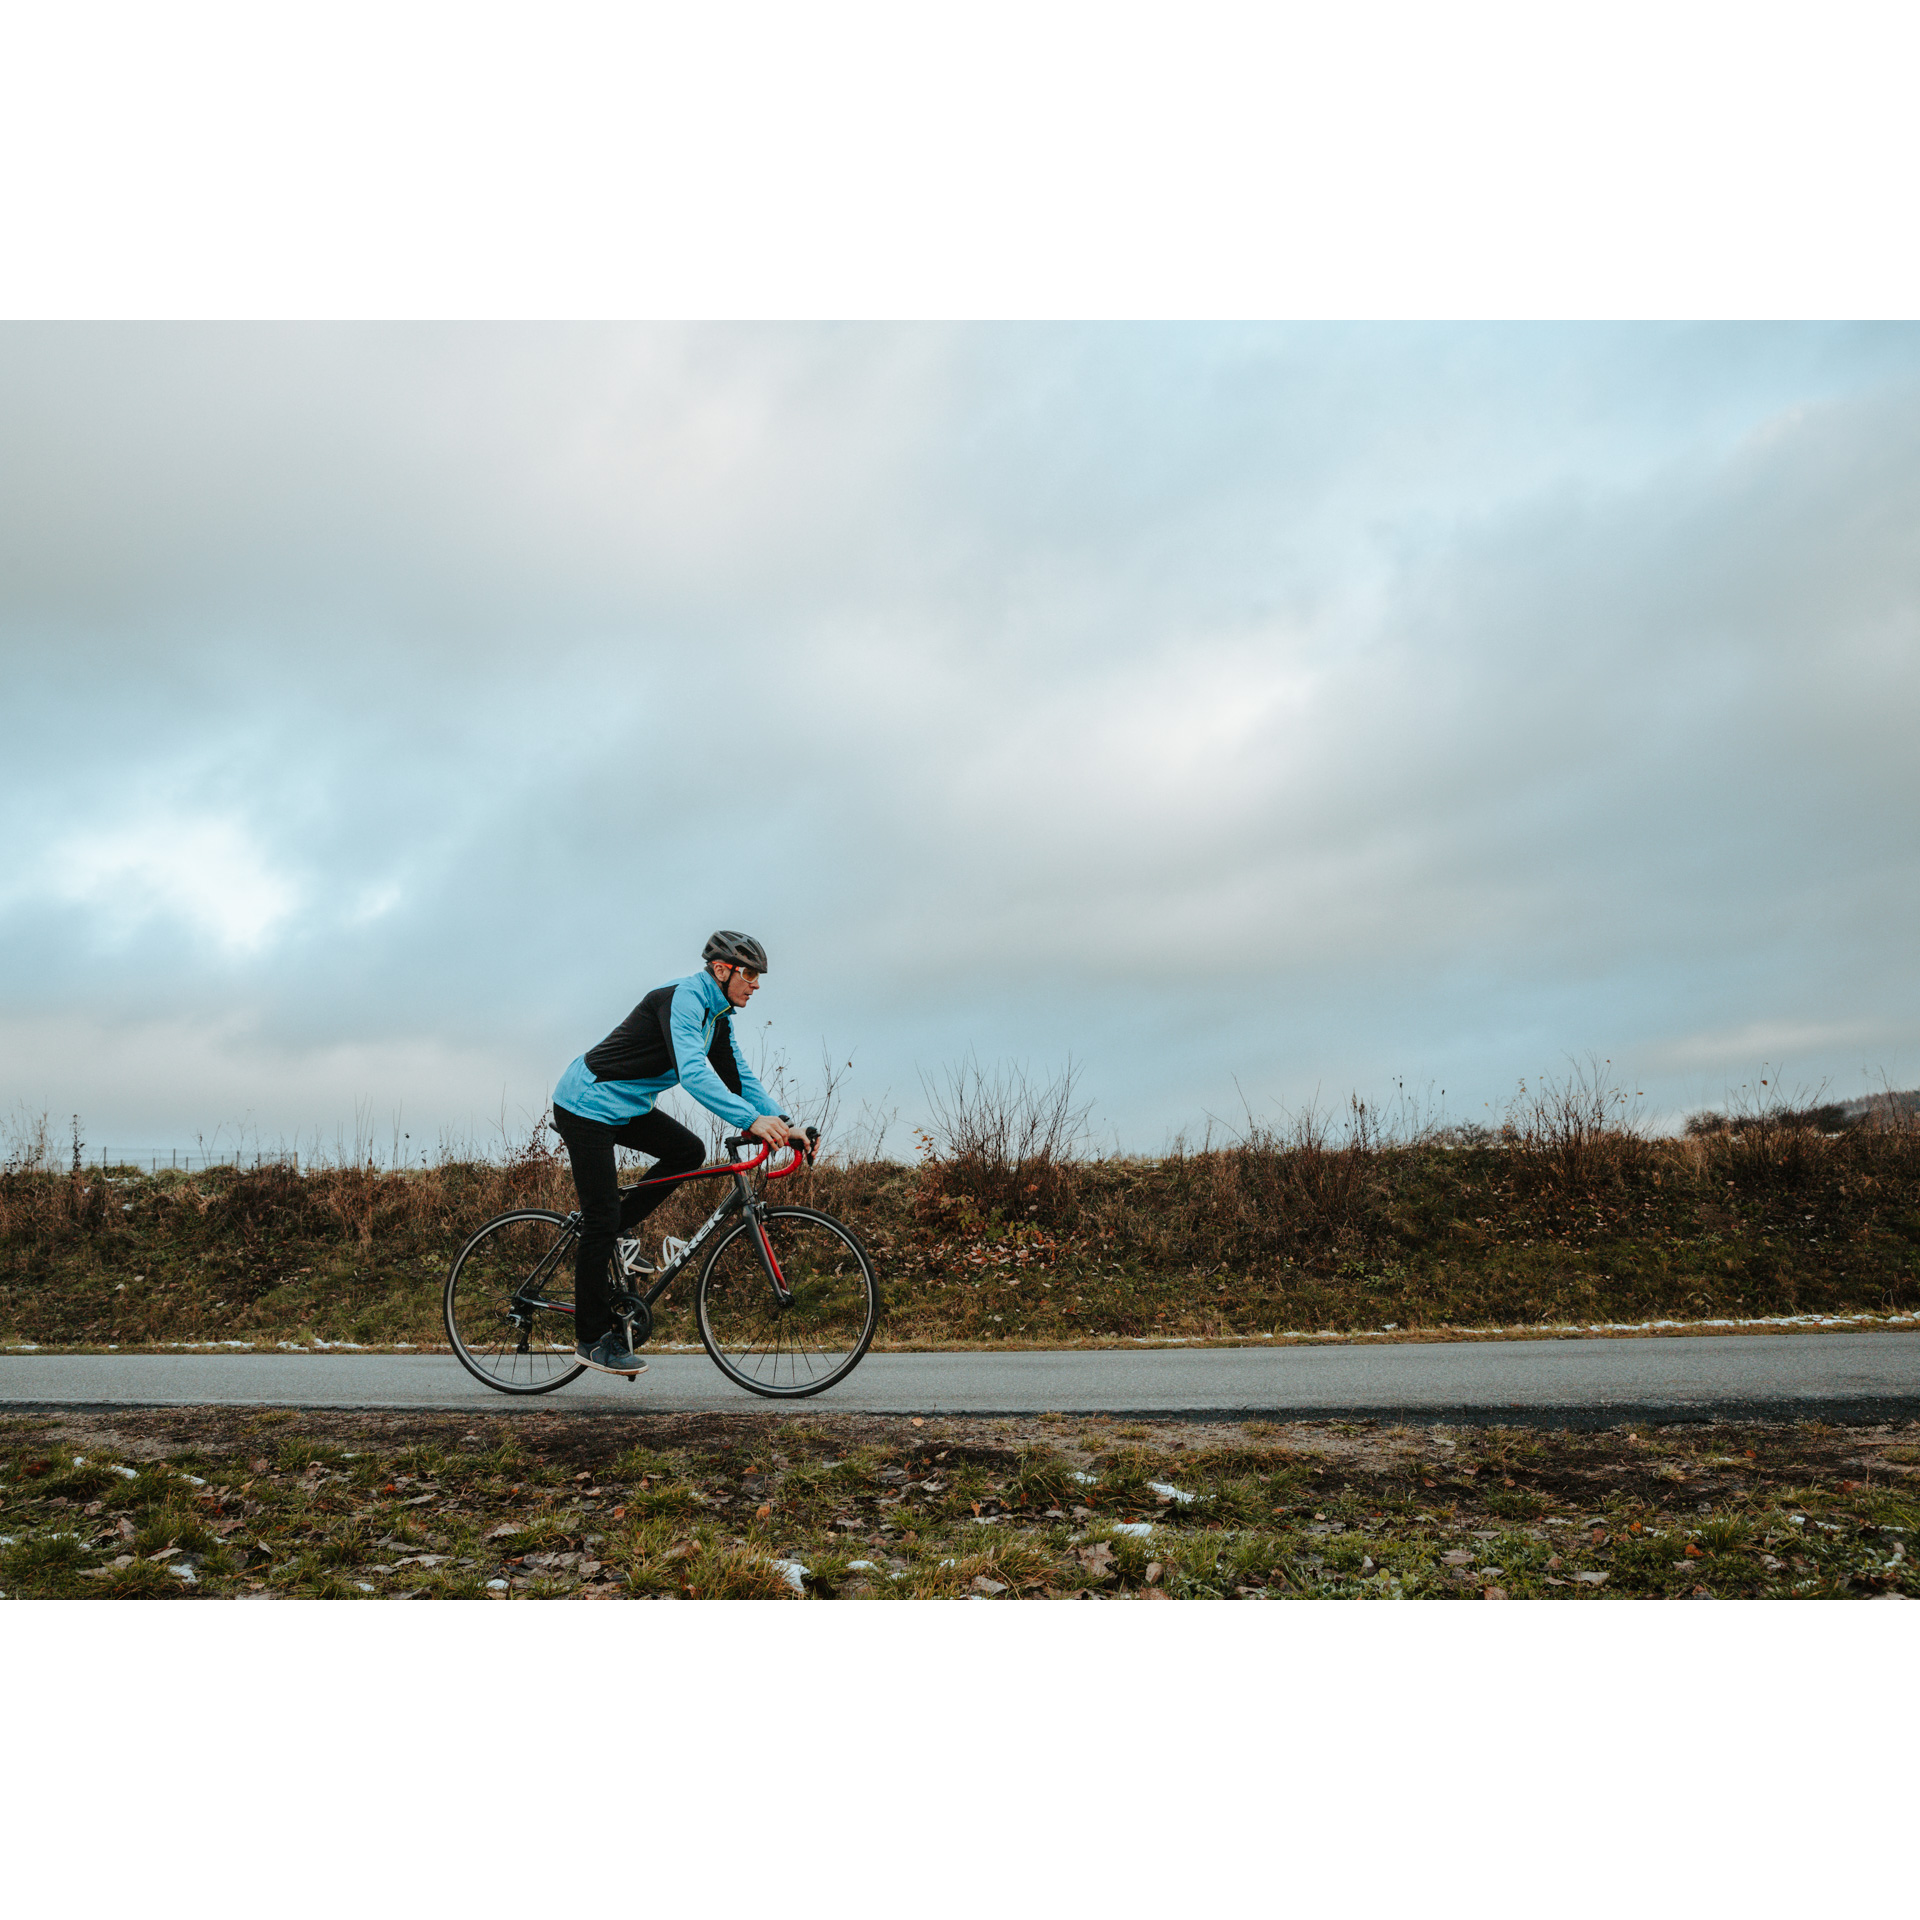 Rowerzysta w niebieskiej kurtce, czarnych spodniach i kasku, jadący na czerwono-czarnym rowerze po asfaltowej drodze, w tle zachmurzone niebo